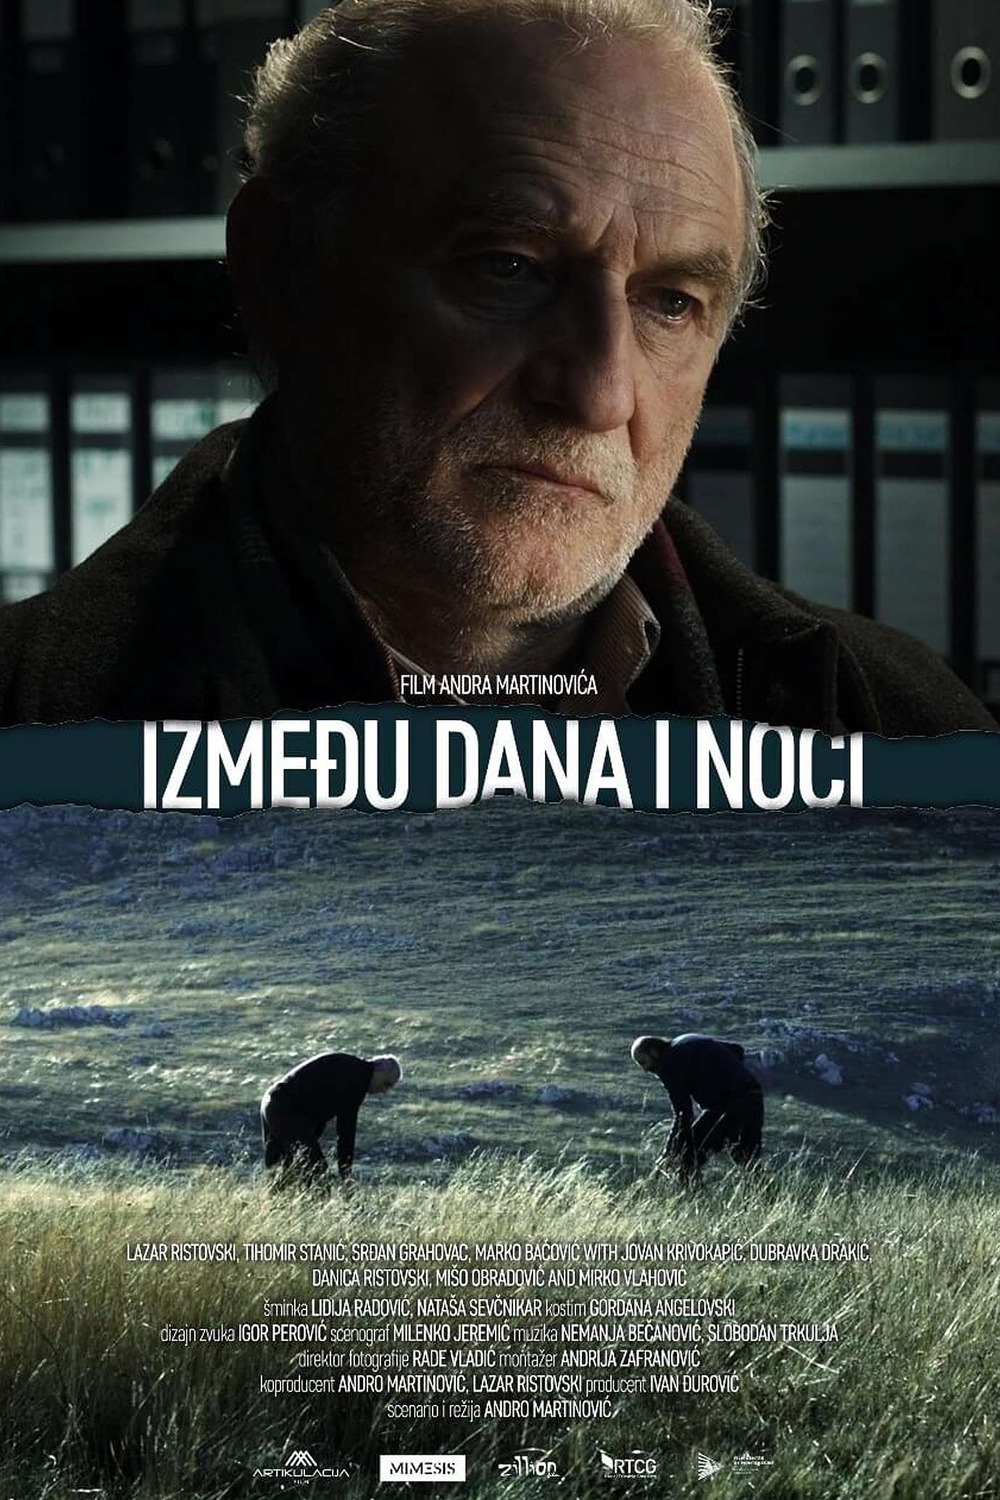 Extra Large Movie Poster Image for Izmedju dana i noci (#1 of 2)